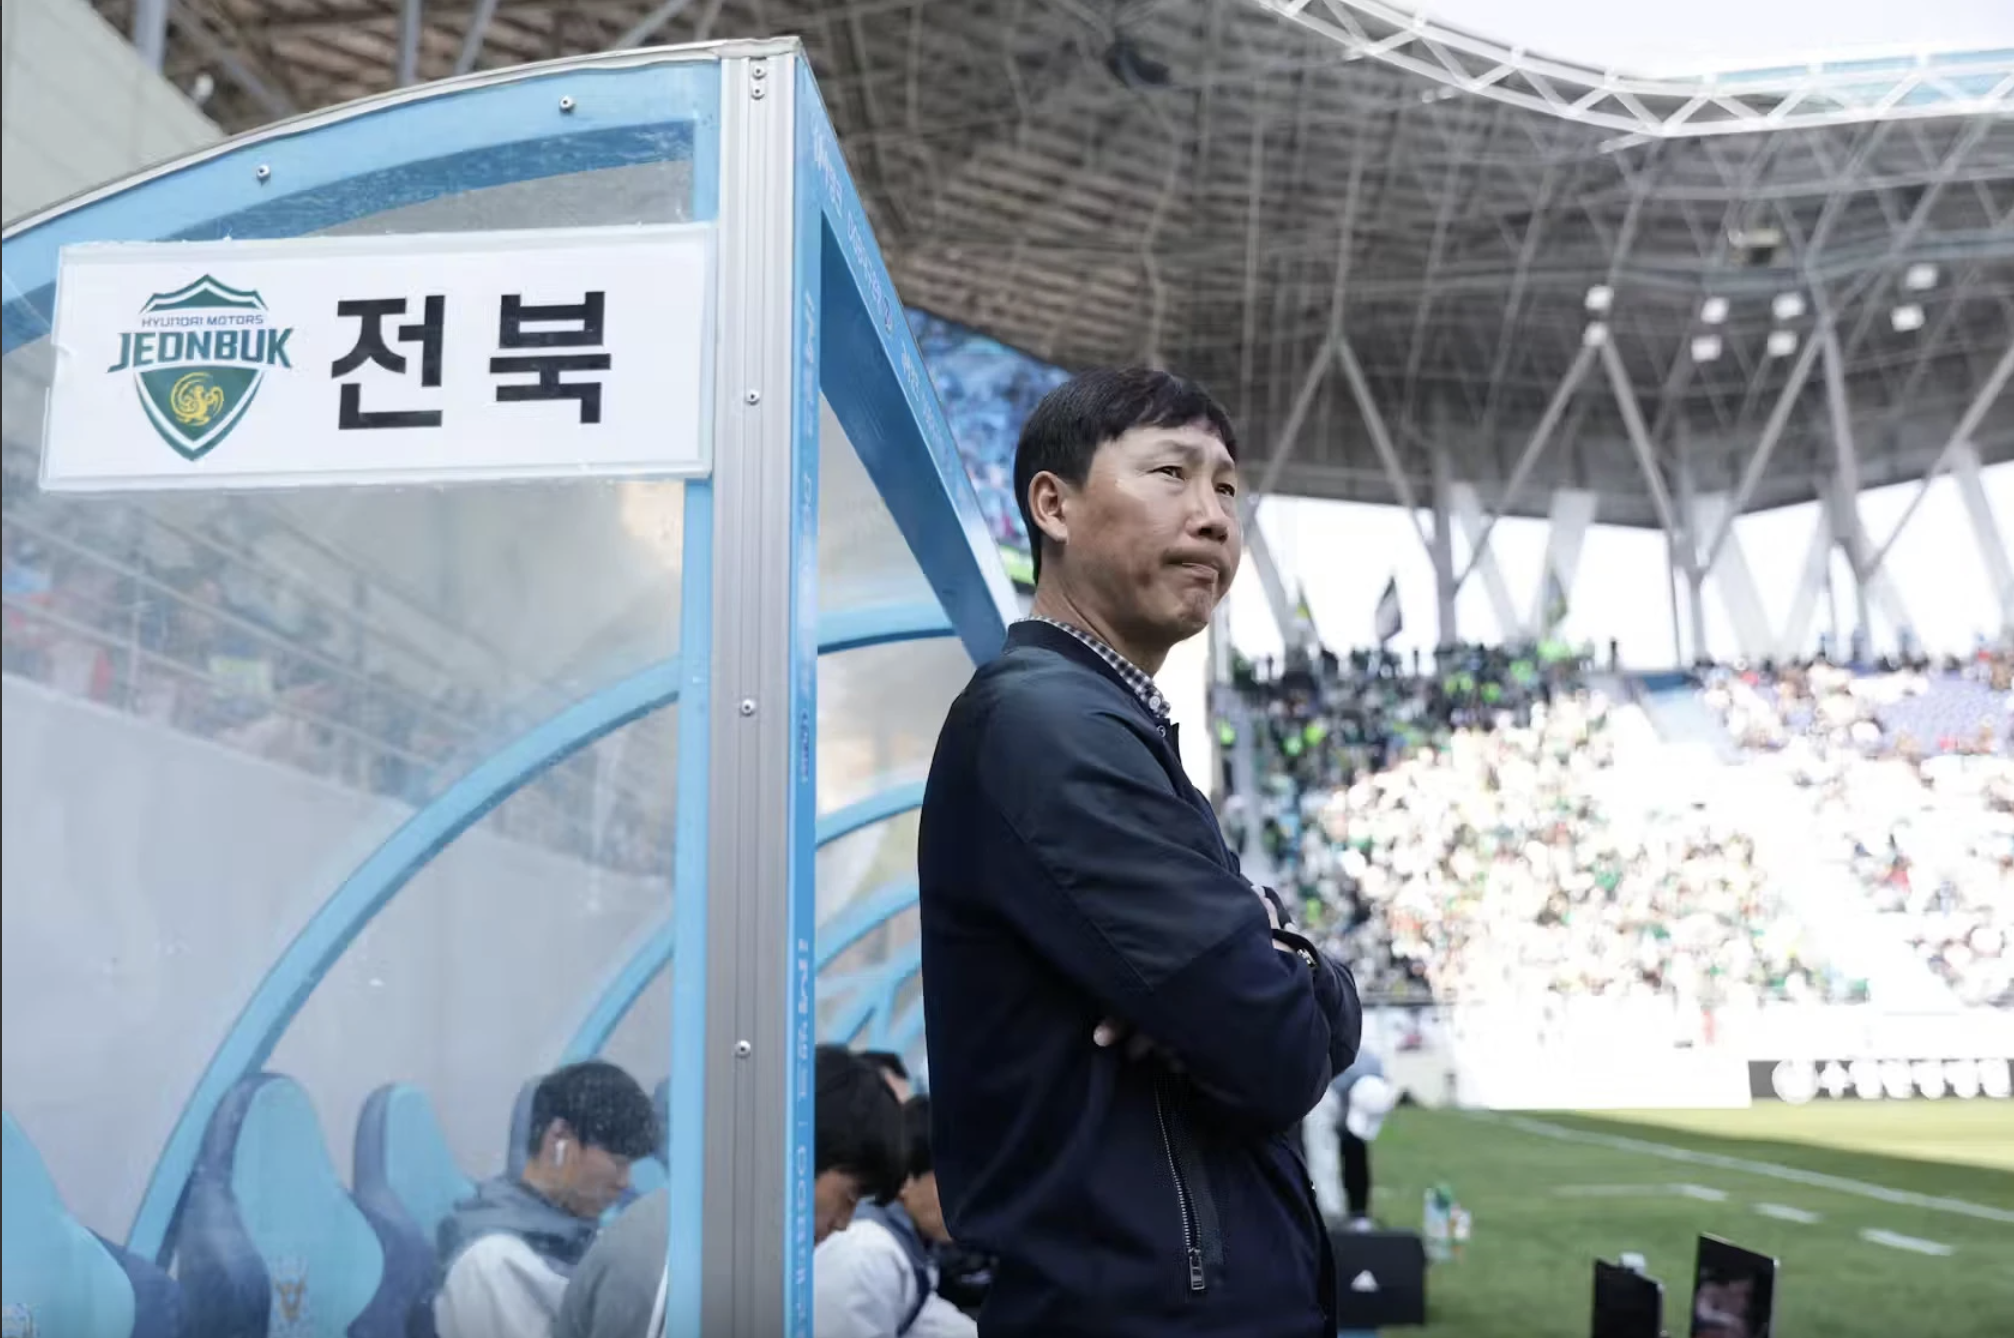 HLV Kim Sang-sik có khả năng kết nối với cầu thủ rất tốt